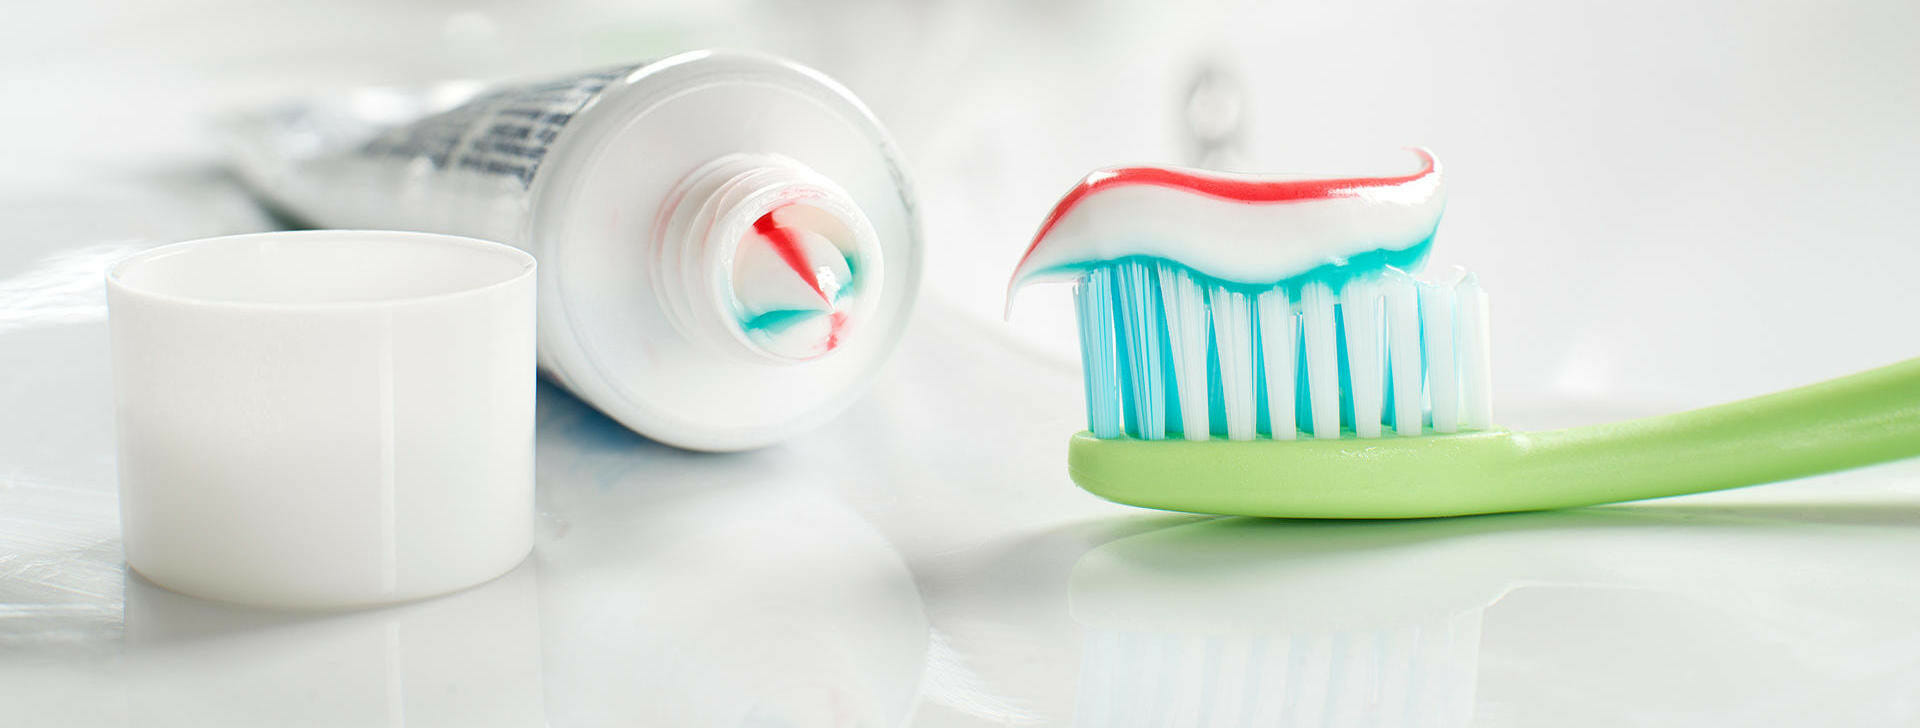 Сравнительная характеристика зубных паст